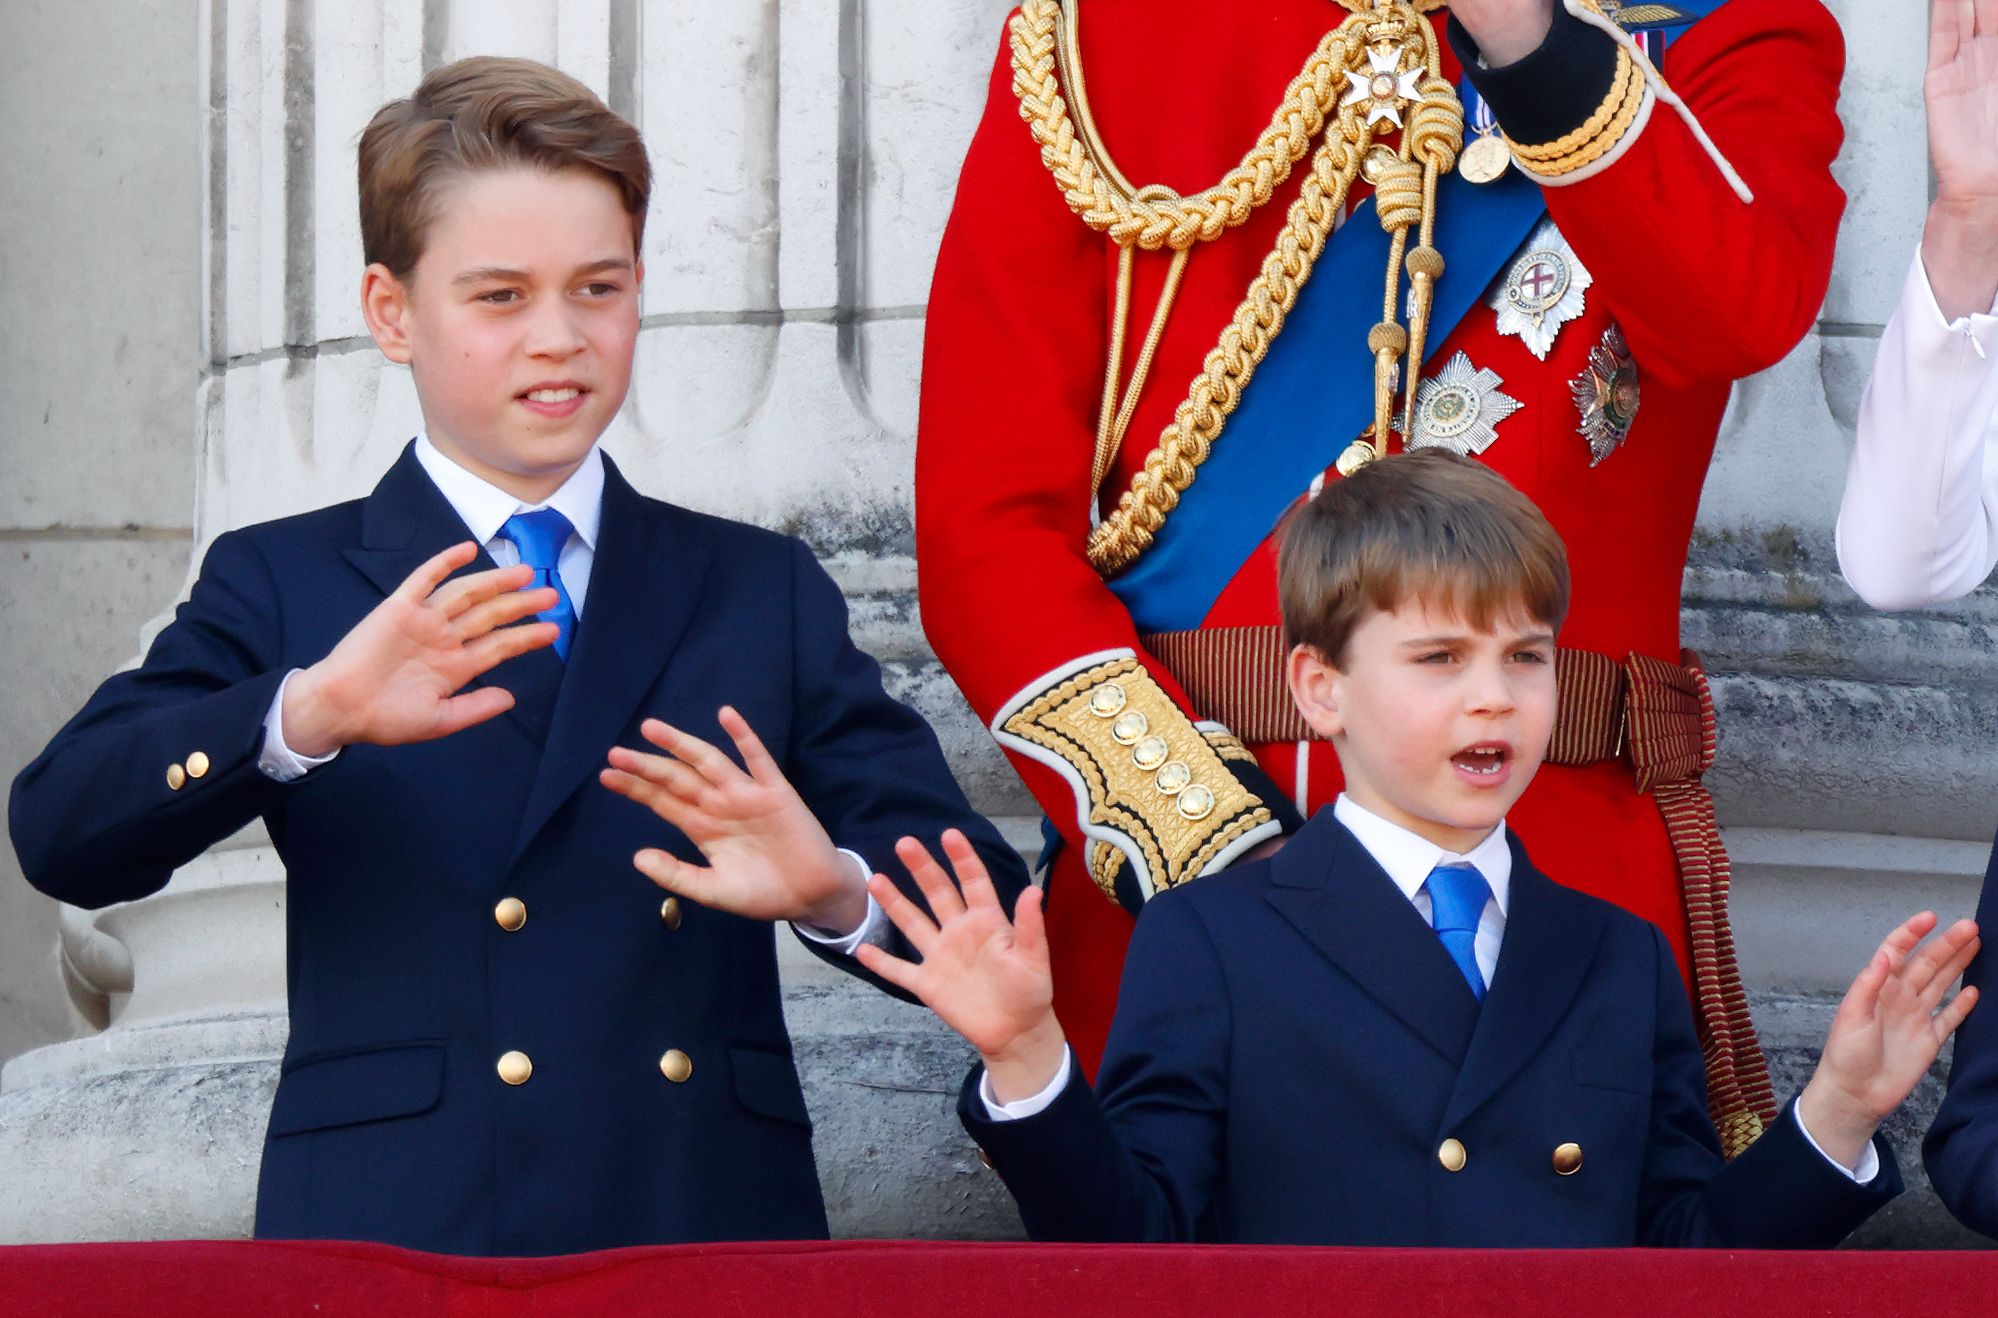 ジョージ王子、トゥルーピング・ザ・カラーでお兄さんらしさを発揮 ルイ王子のお行儀を注意